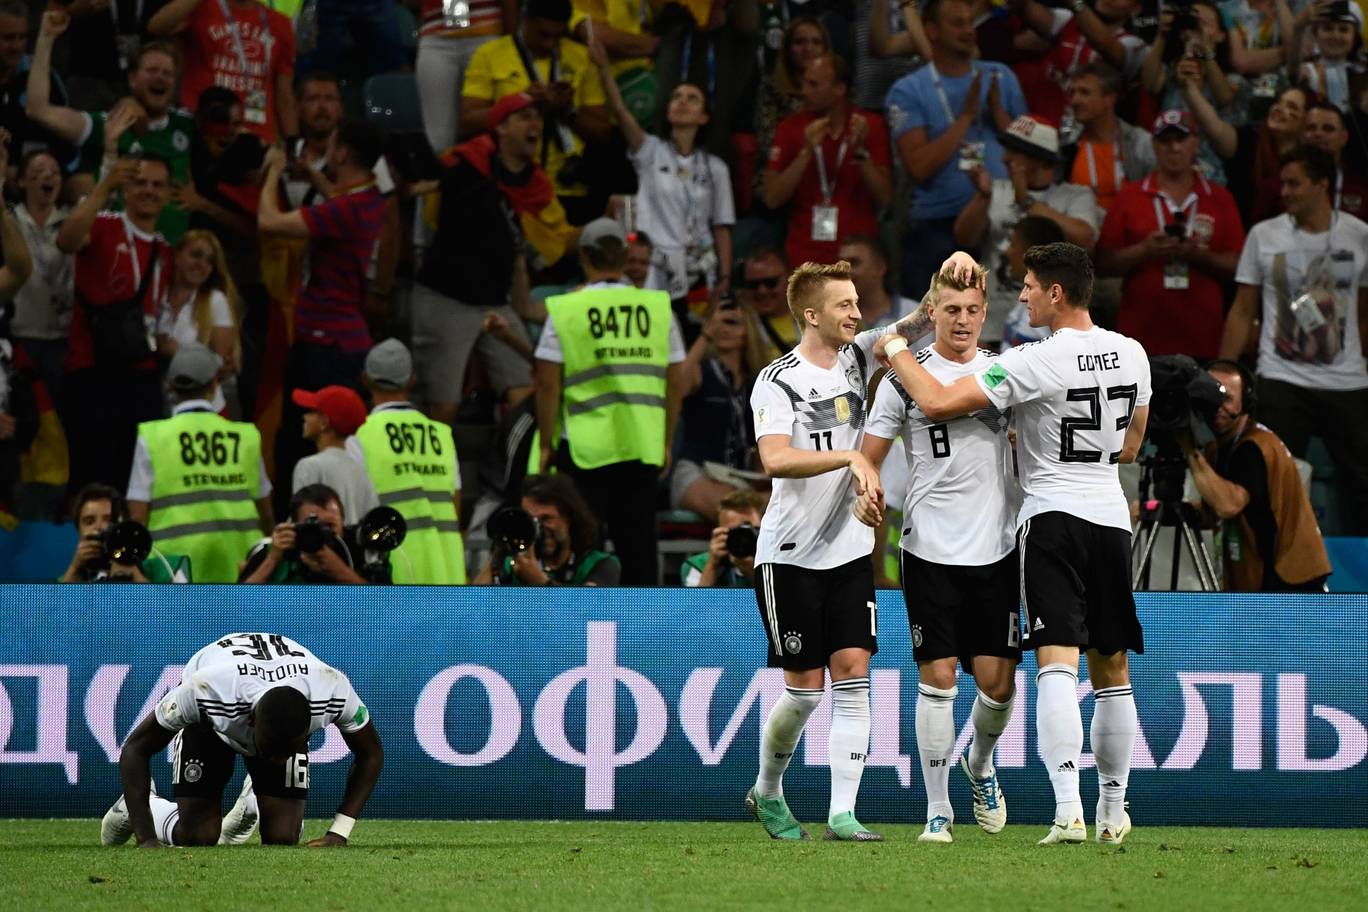 Germany vs Sweden Goal Celebration Image